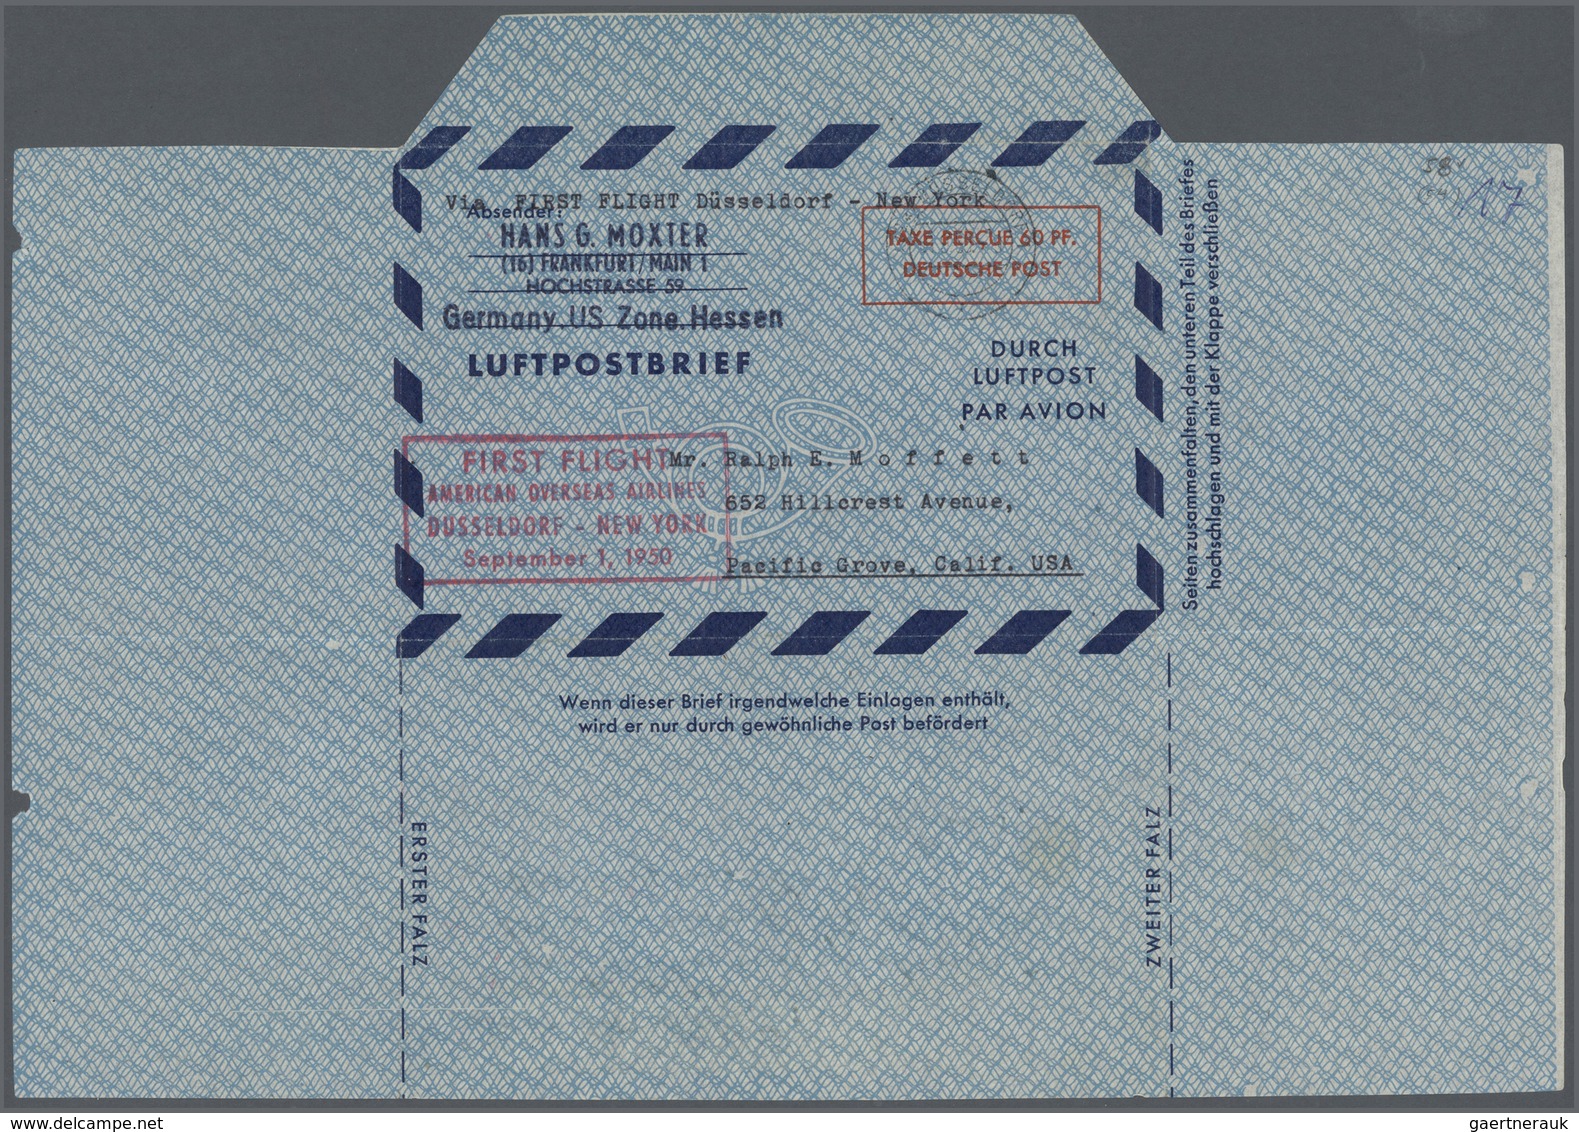 Bundesrepublik und Berlin: Ab 1948. Spezialsammlung LUFTPOST-FALTBRIEFE Berlin/Bizone/Bund. Extrem d